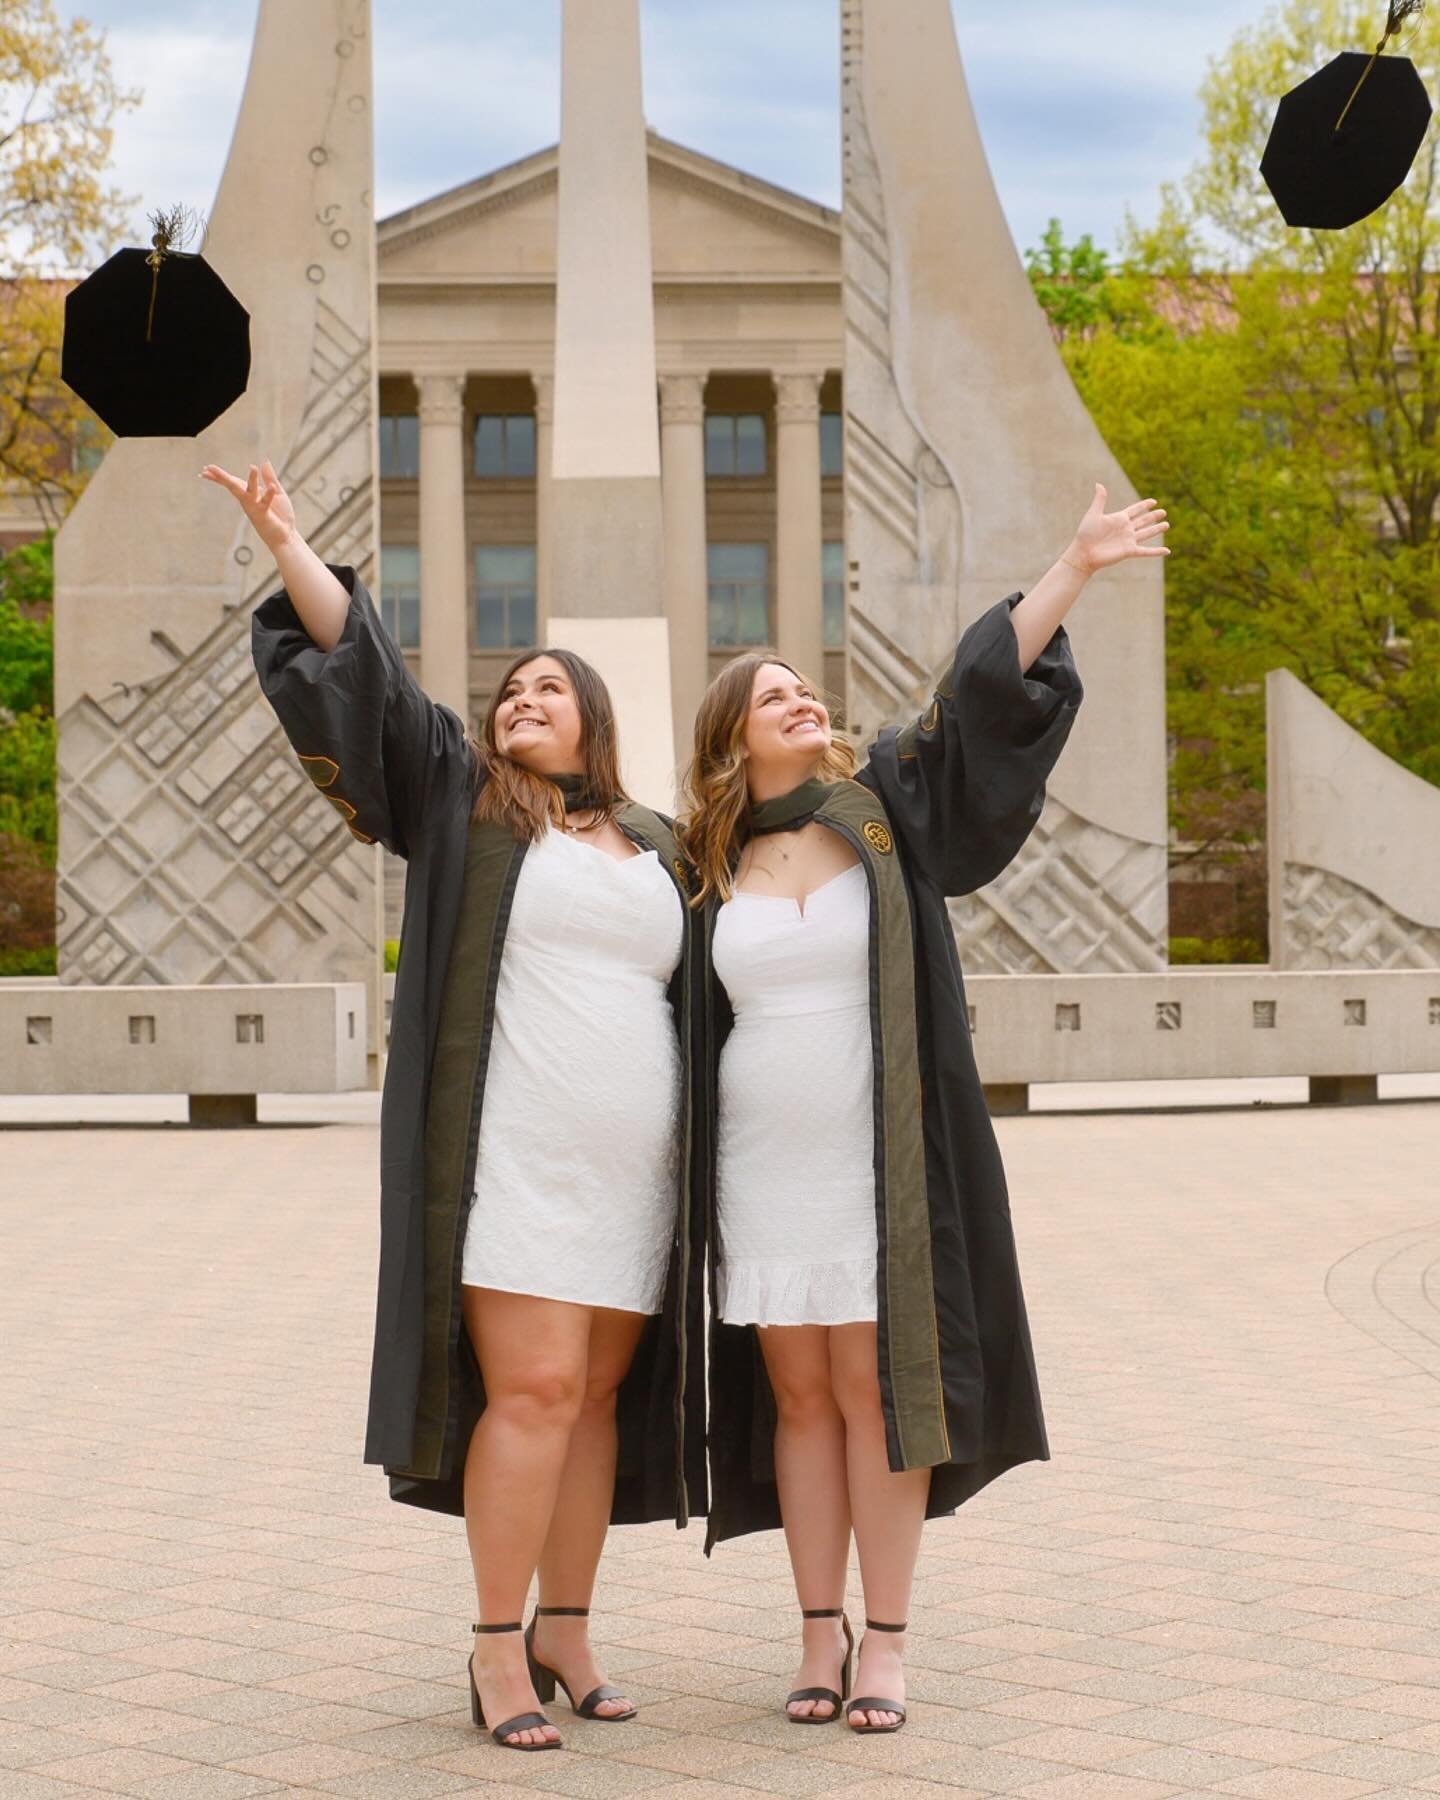 Happy Graduation, Purdue Boilermakers! 
🎓💛🖤
AUTUMN
Class of 2024

#purdueboilermakers 
#graduationphotography 
#capandgownpics 
#westlafayetteindiana 
#seniorphotographer 
#hailpurdue